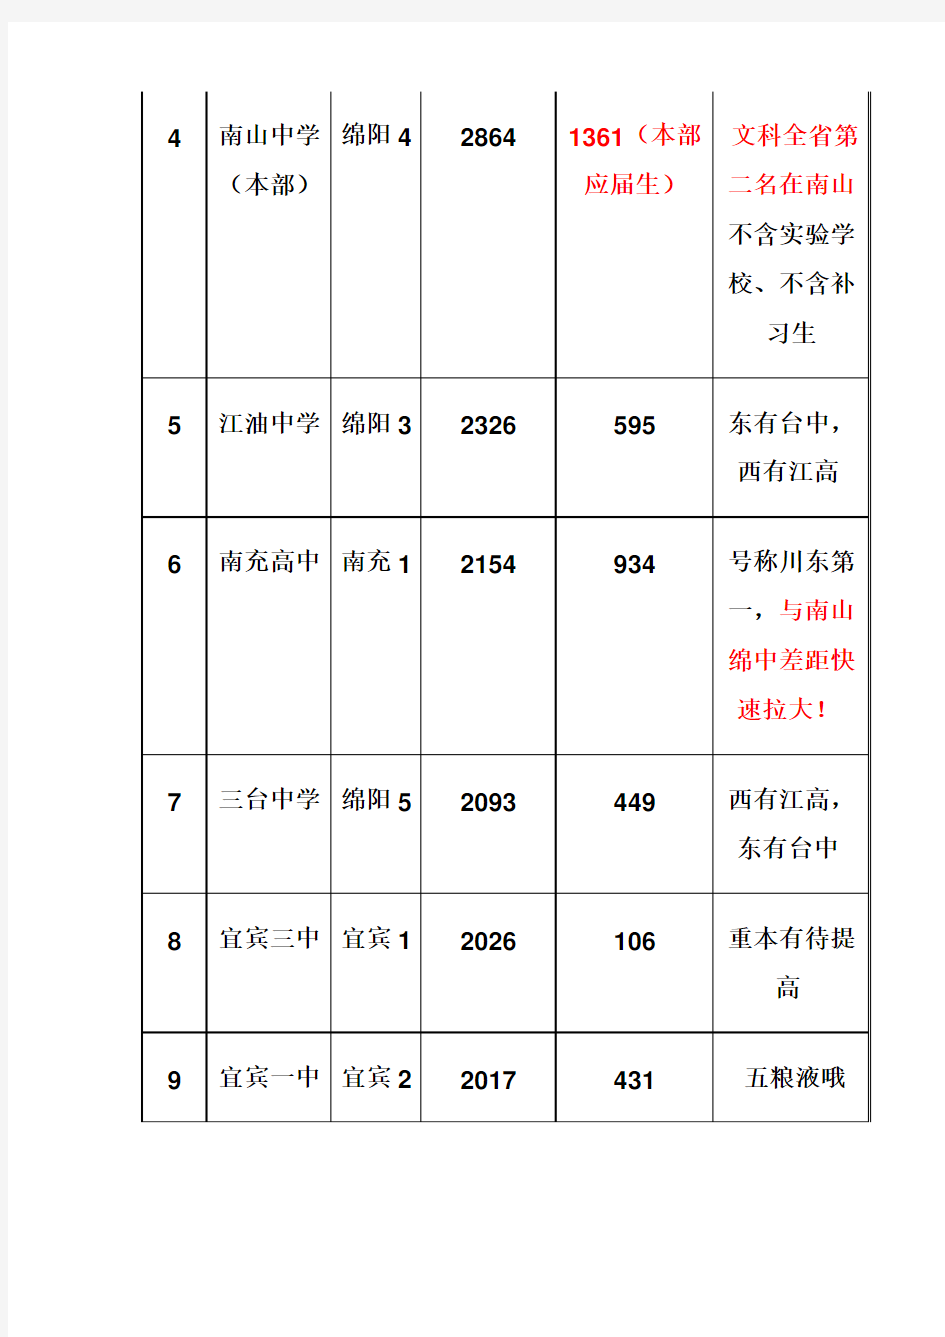 2014年四川中学高考成绩汇总排名1